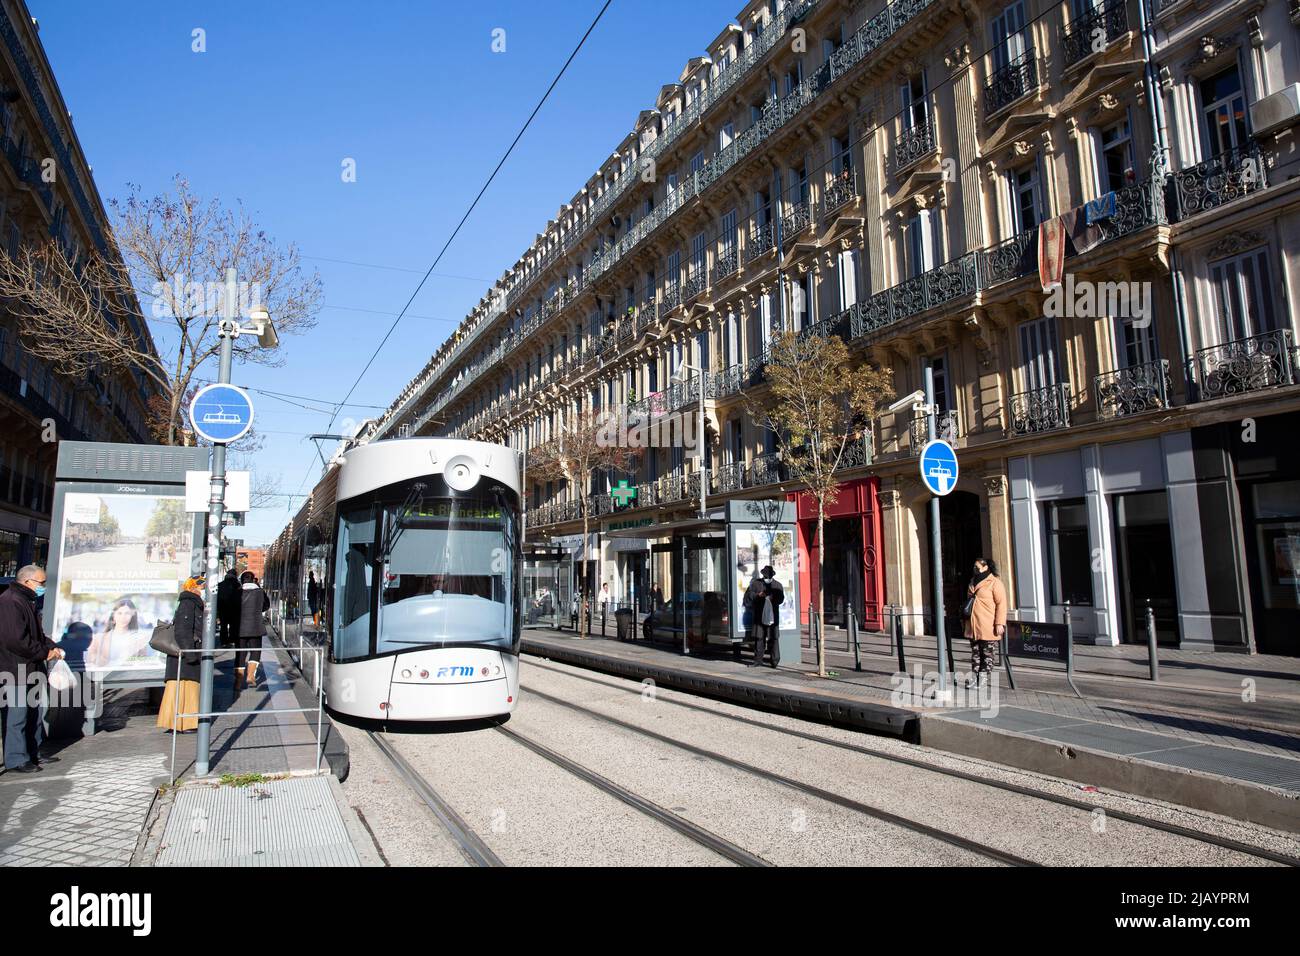 Red de tranvías en Marsella, Francia, el 6 de diciembre de 2021. La moderna red de tranvías de la ciudad consta de tres líneas, que prestan servicio a 32 estaciones y operan a más de 15,8 kilómetros (9,8 millas) de ruta, inaugurado el 2007 de julio. Fotografía de Bénédicte Desrus Foto de stock